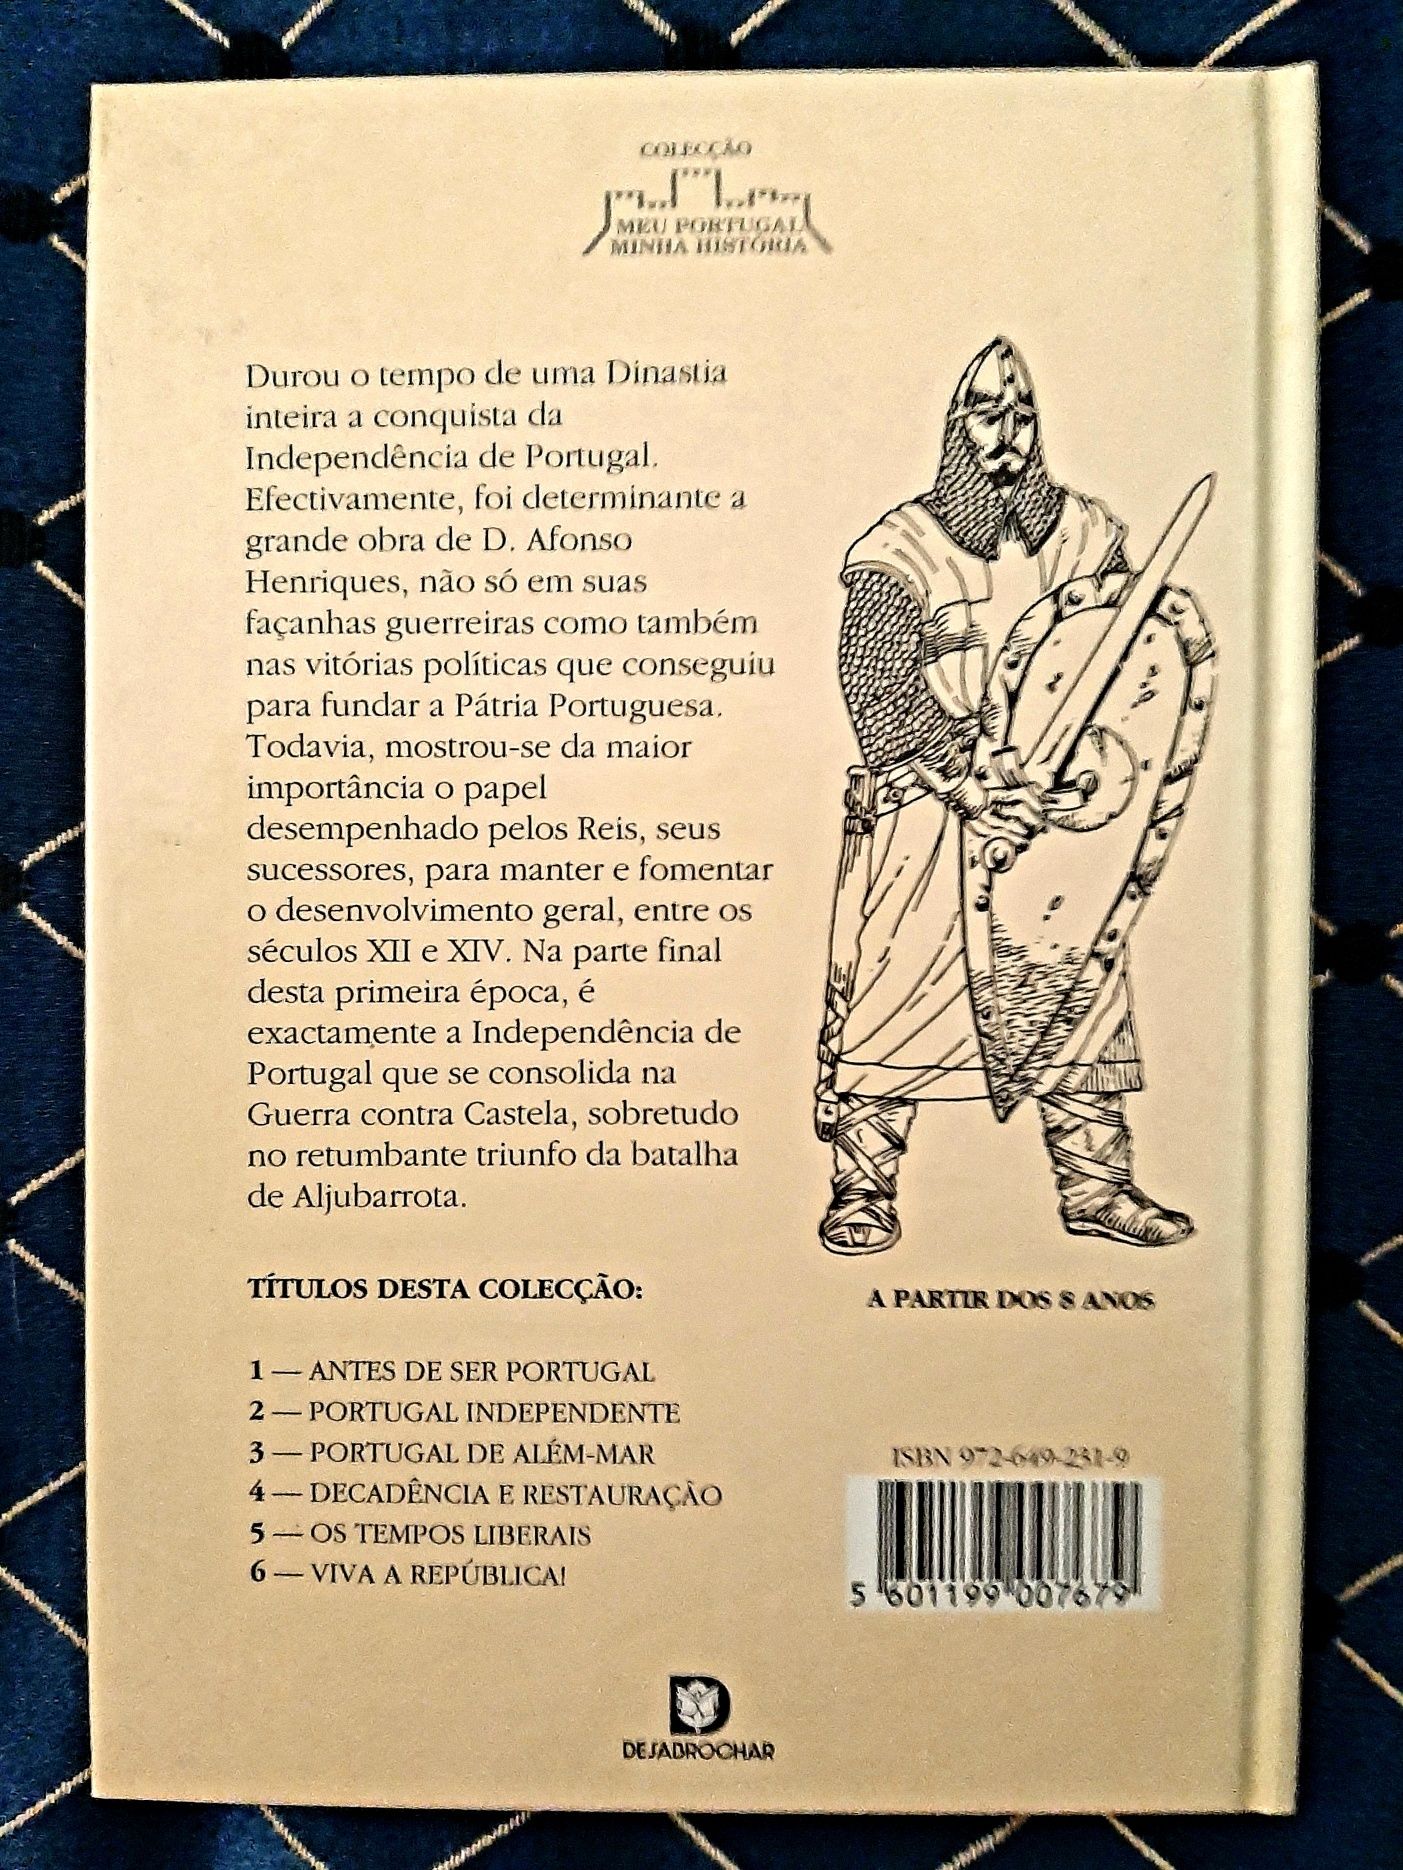 2 Livros Didáticos sobre Historia Portugal